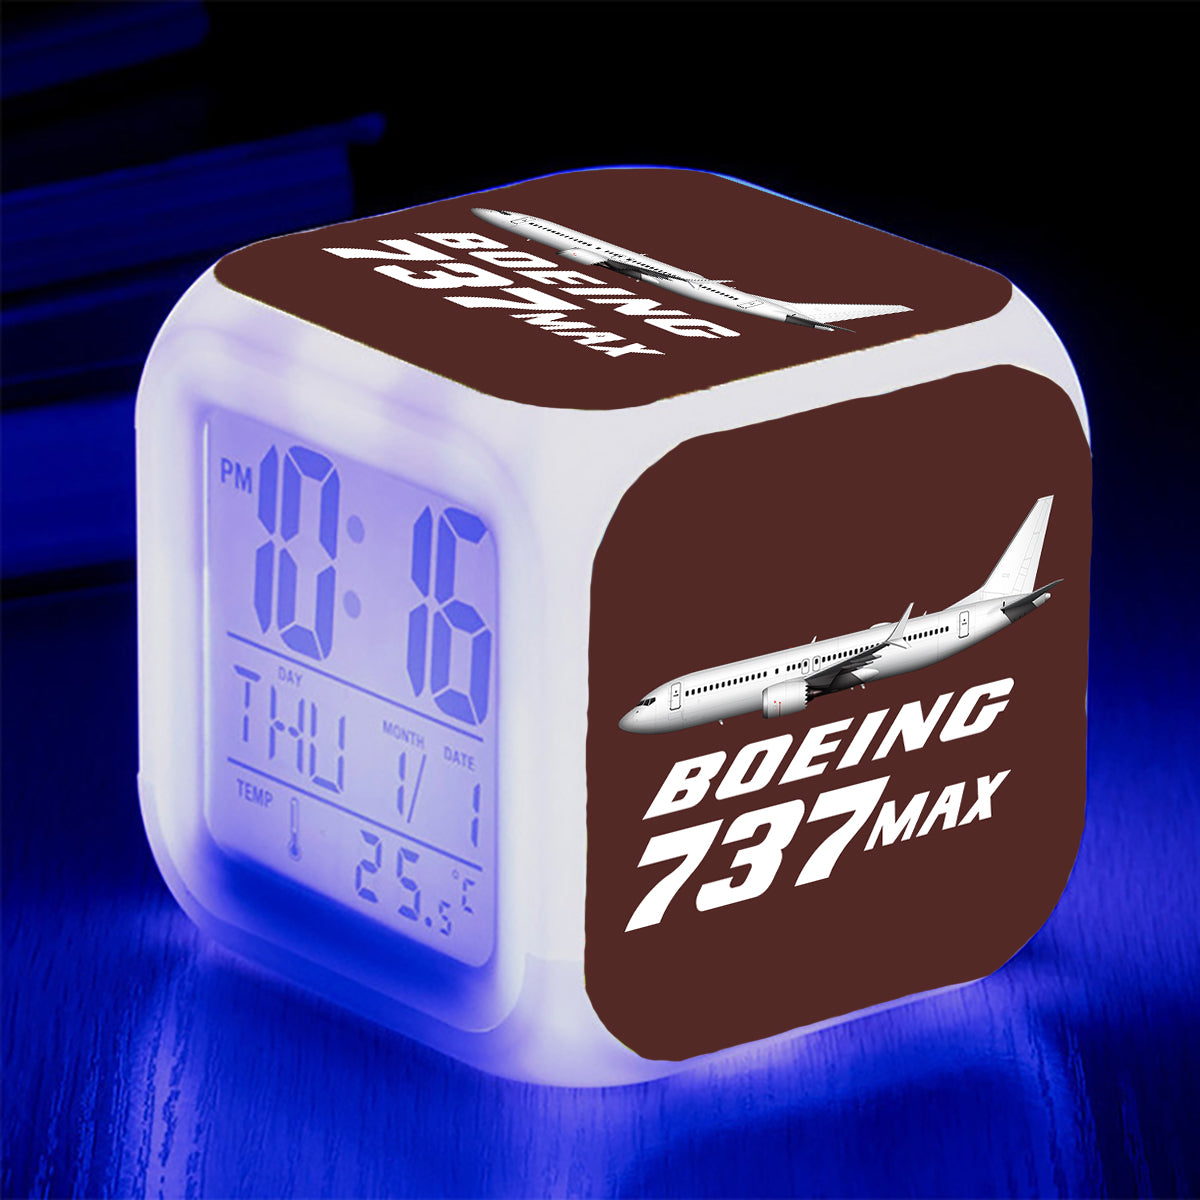 The Boeing 737Max Designed "7 Colour" Digital Alarm Clock